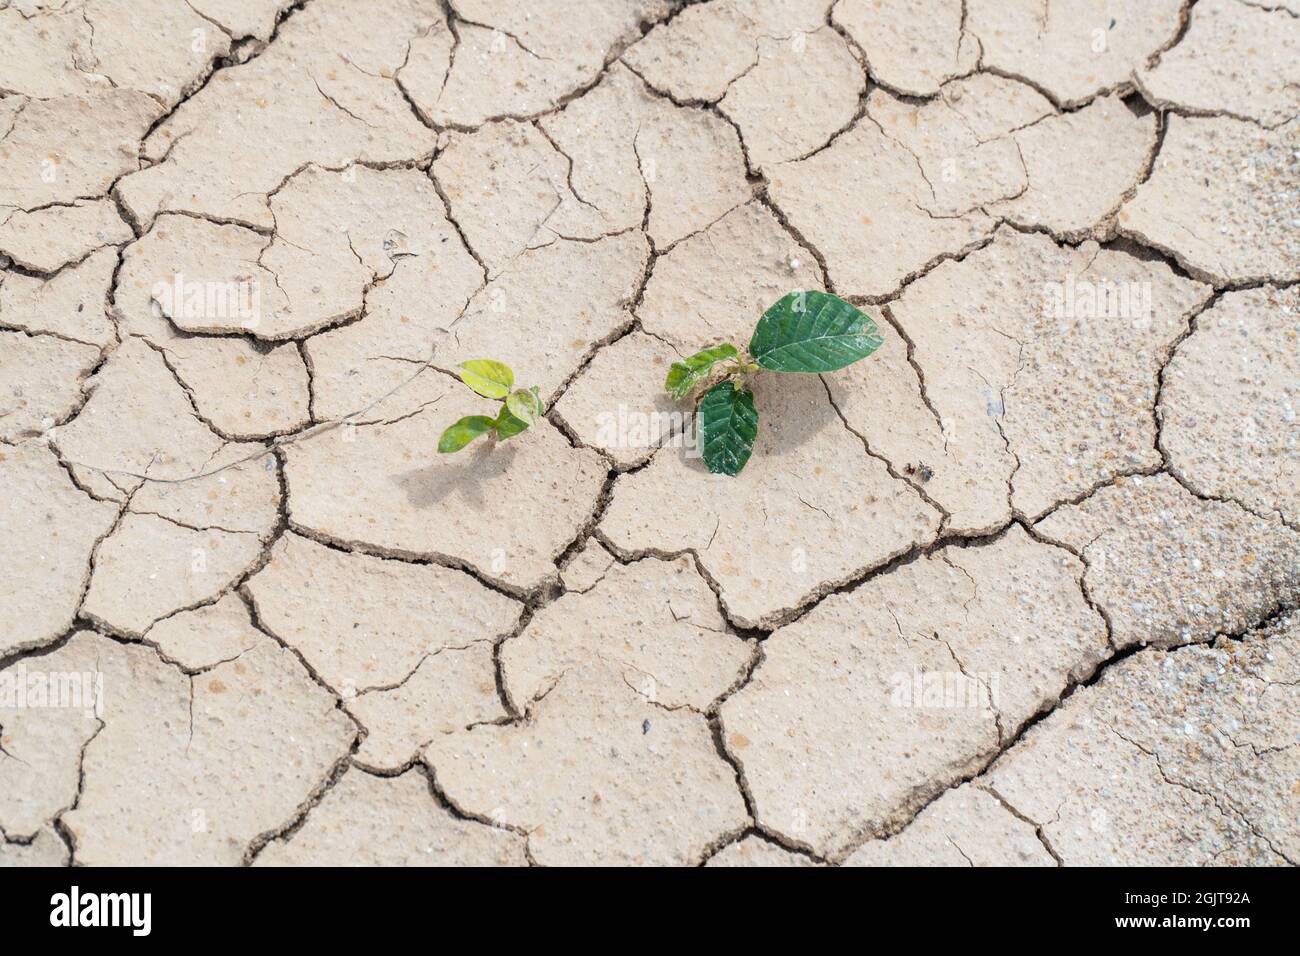 La planta sobrevive en un terreno seco y condiciones de sequía Foto de stock